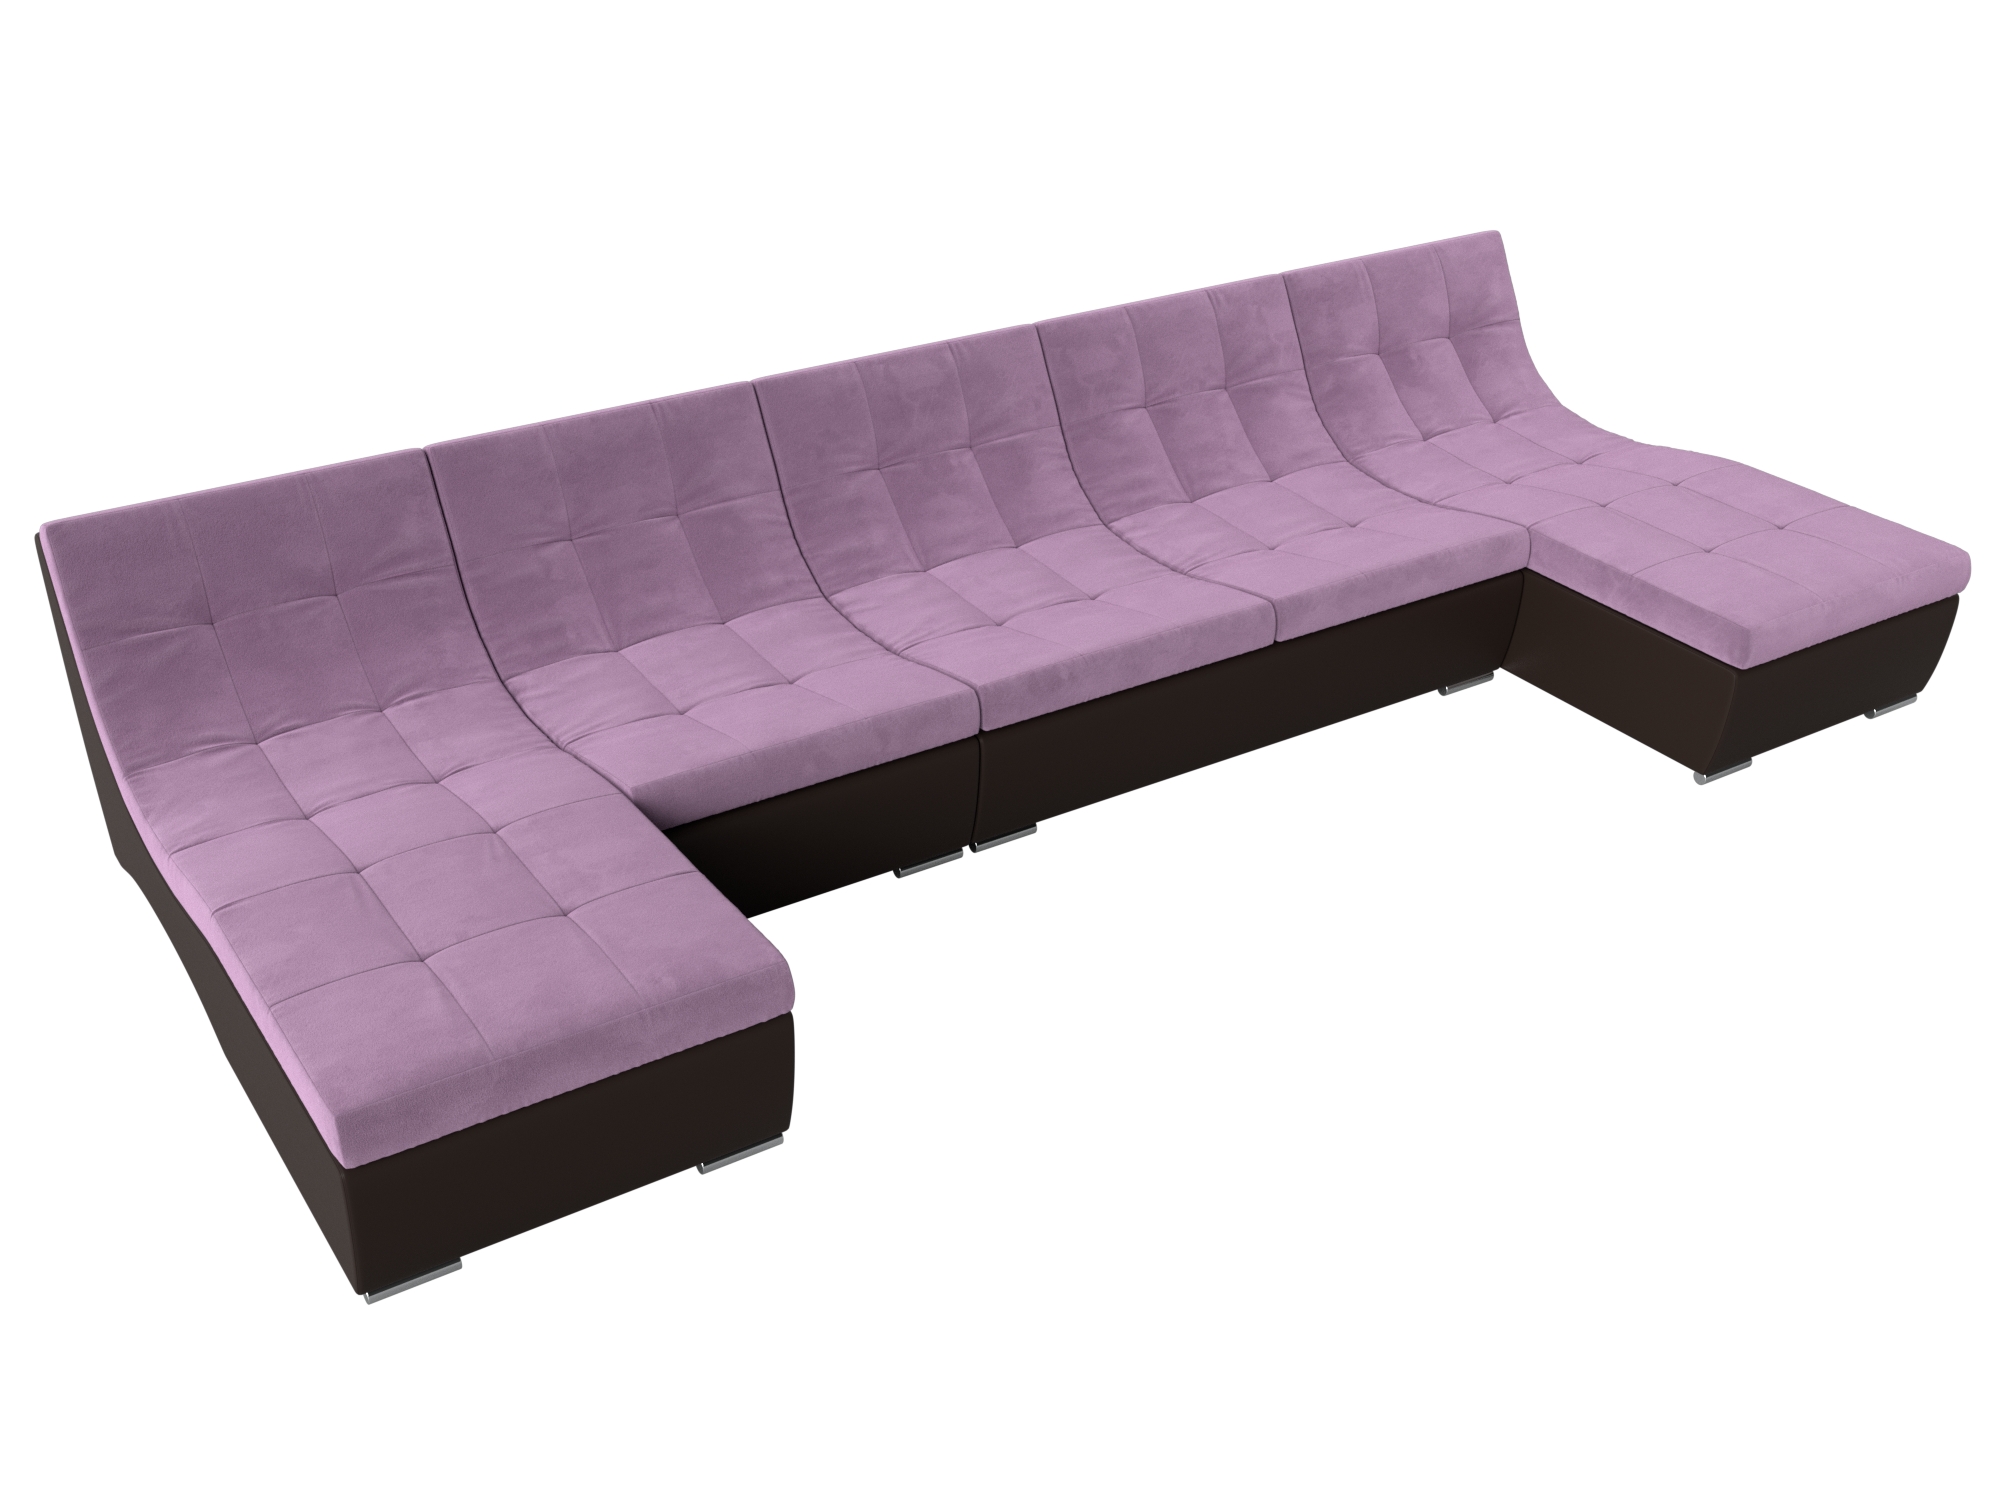 П-образный модульный диван Монреаль Long (Сиреневый\Коричневый)